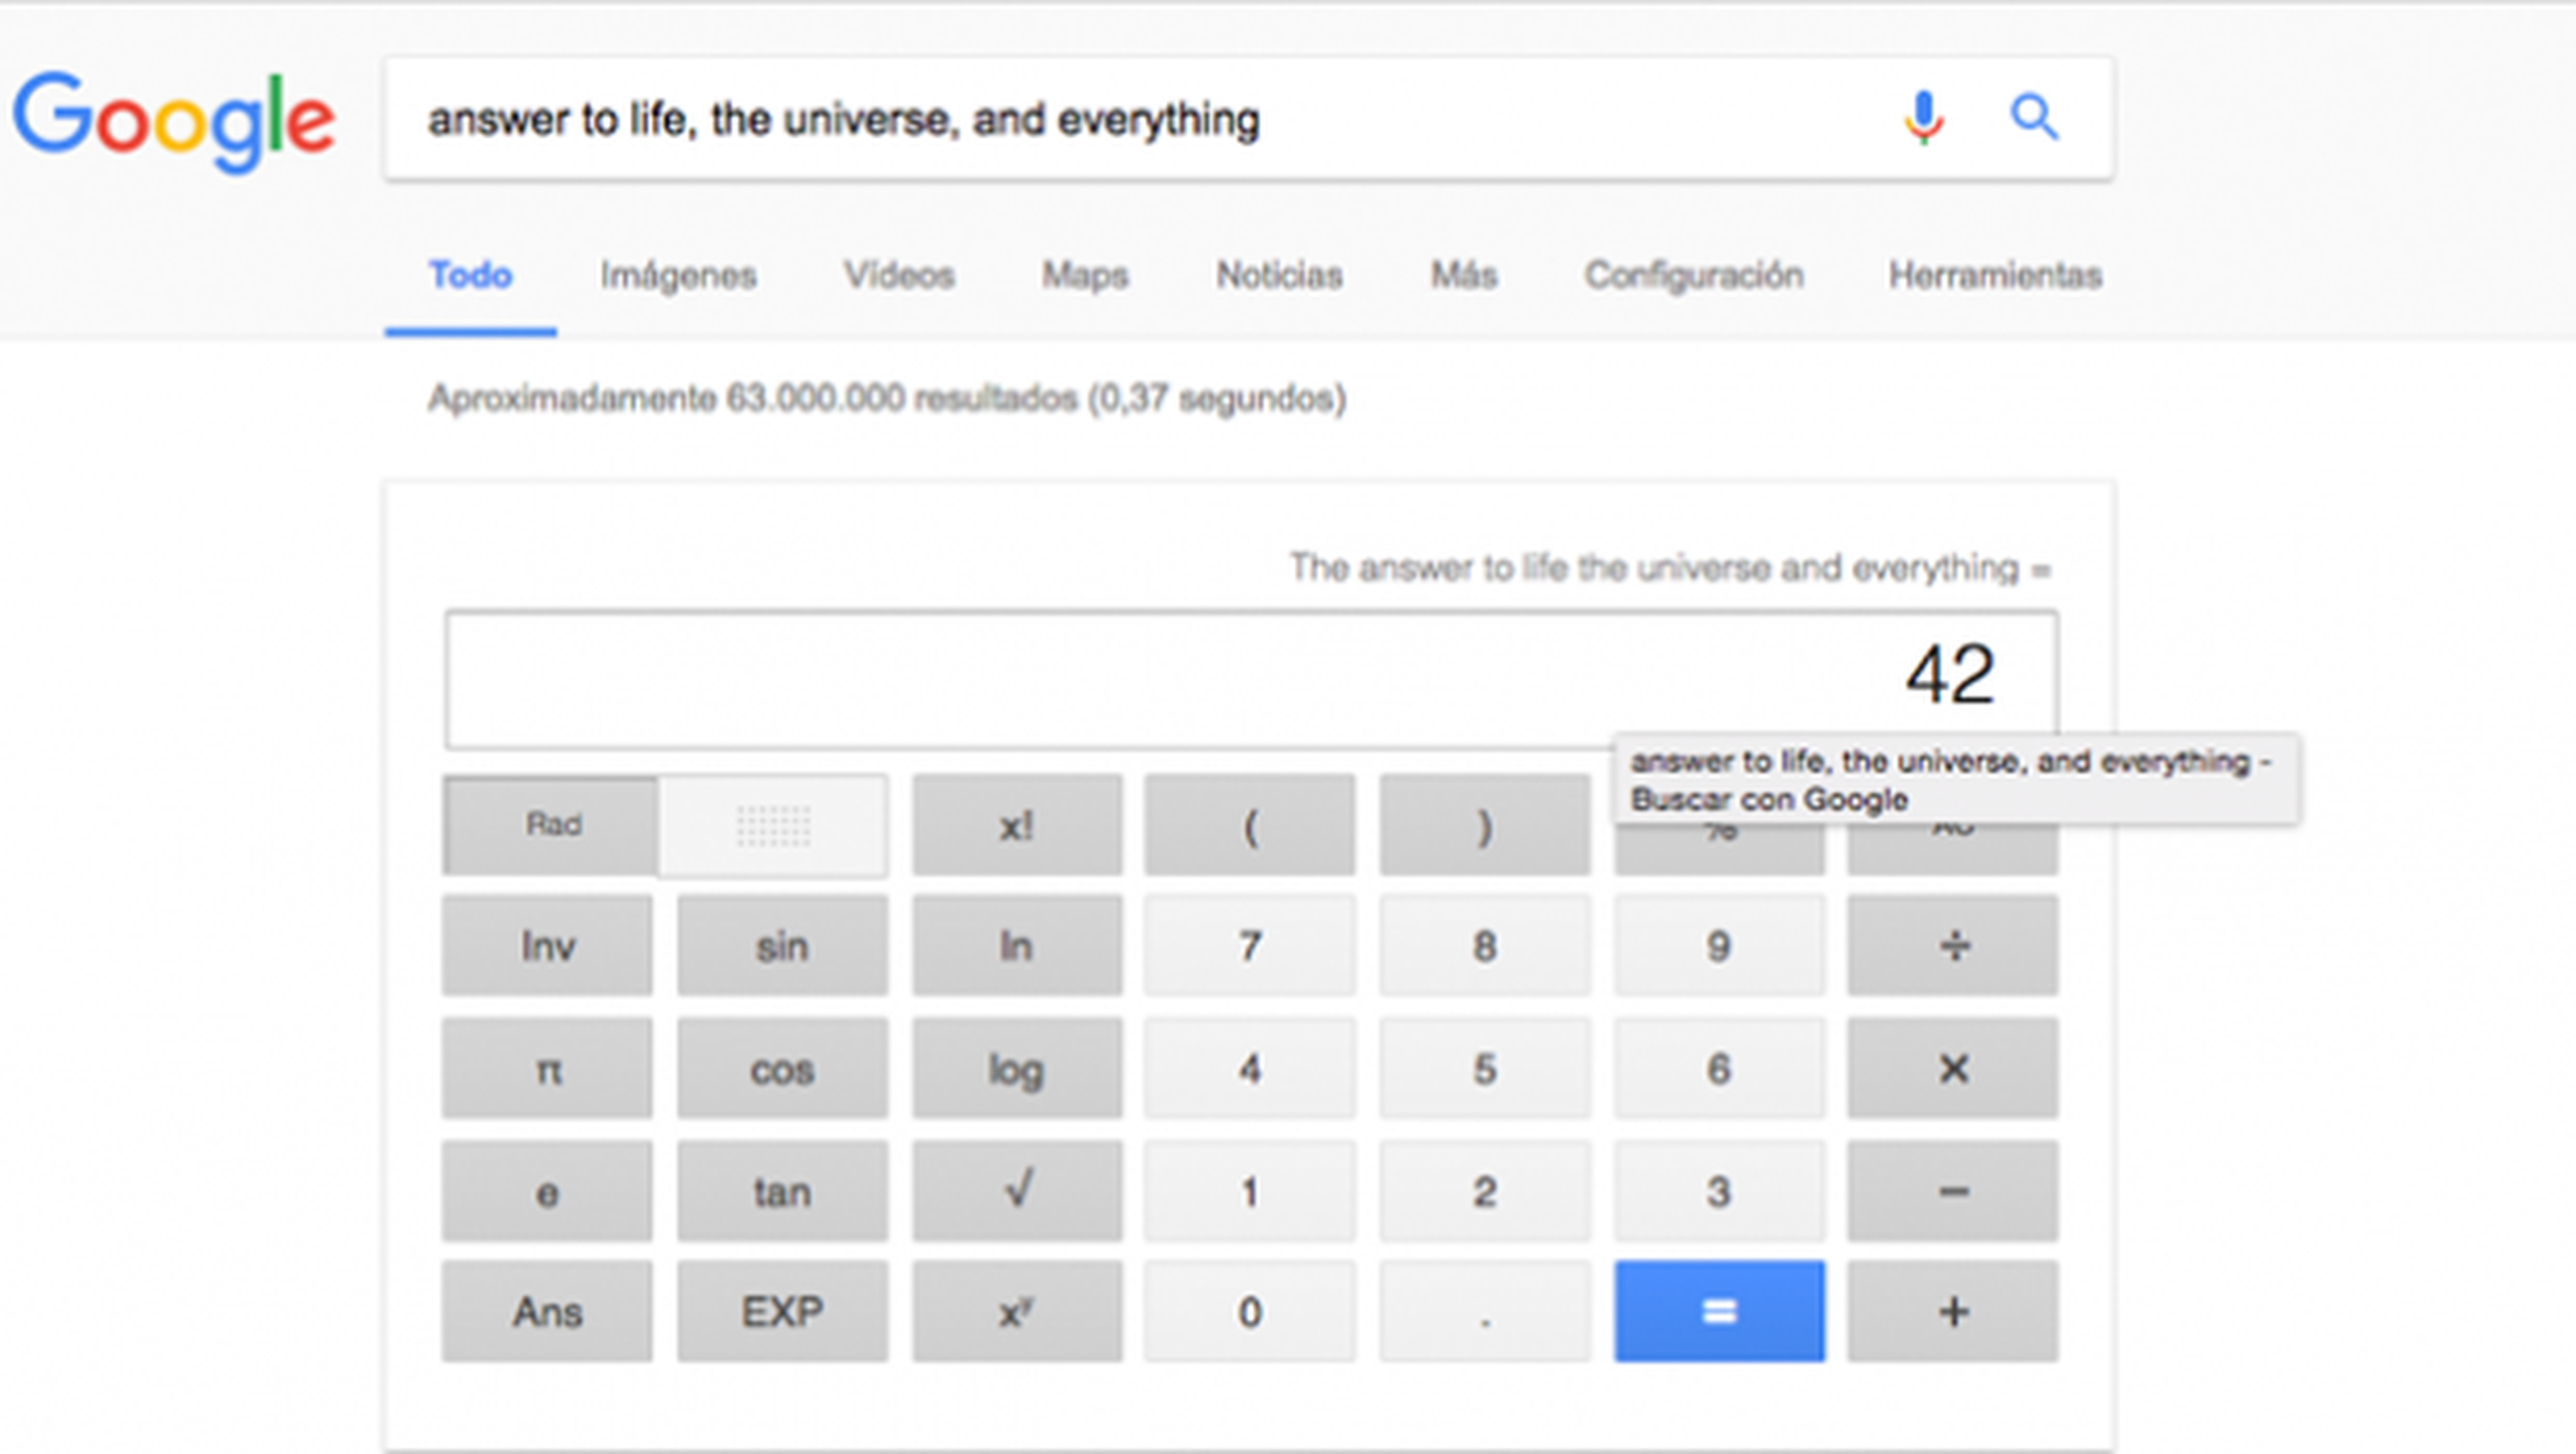 La respuesta al origen del universo, según Google